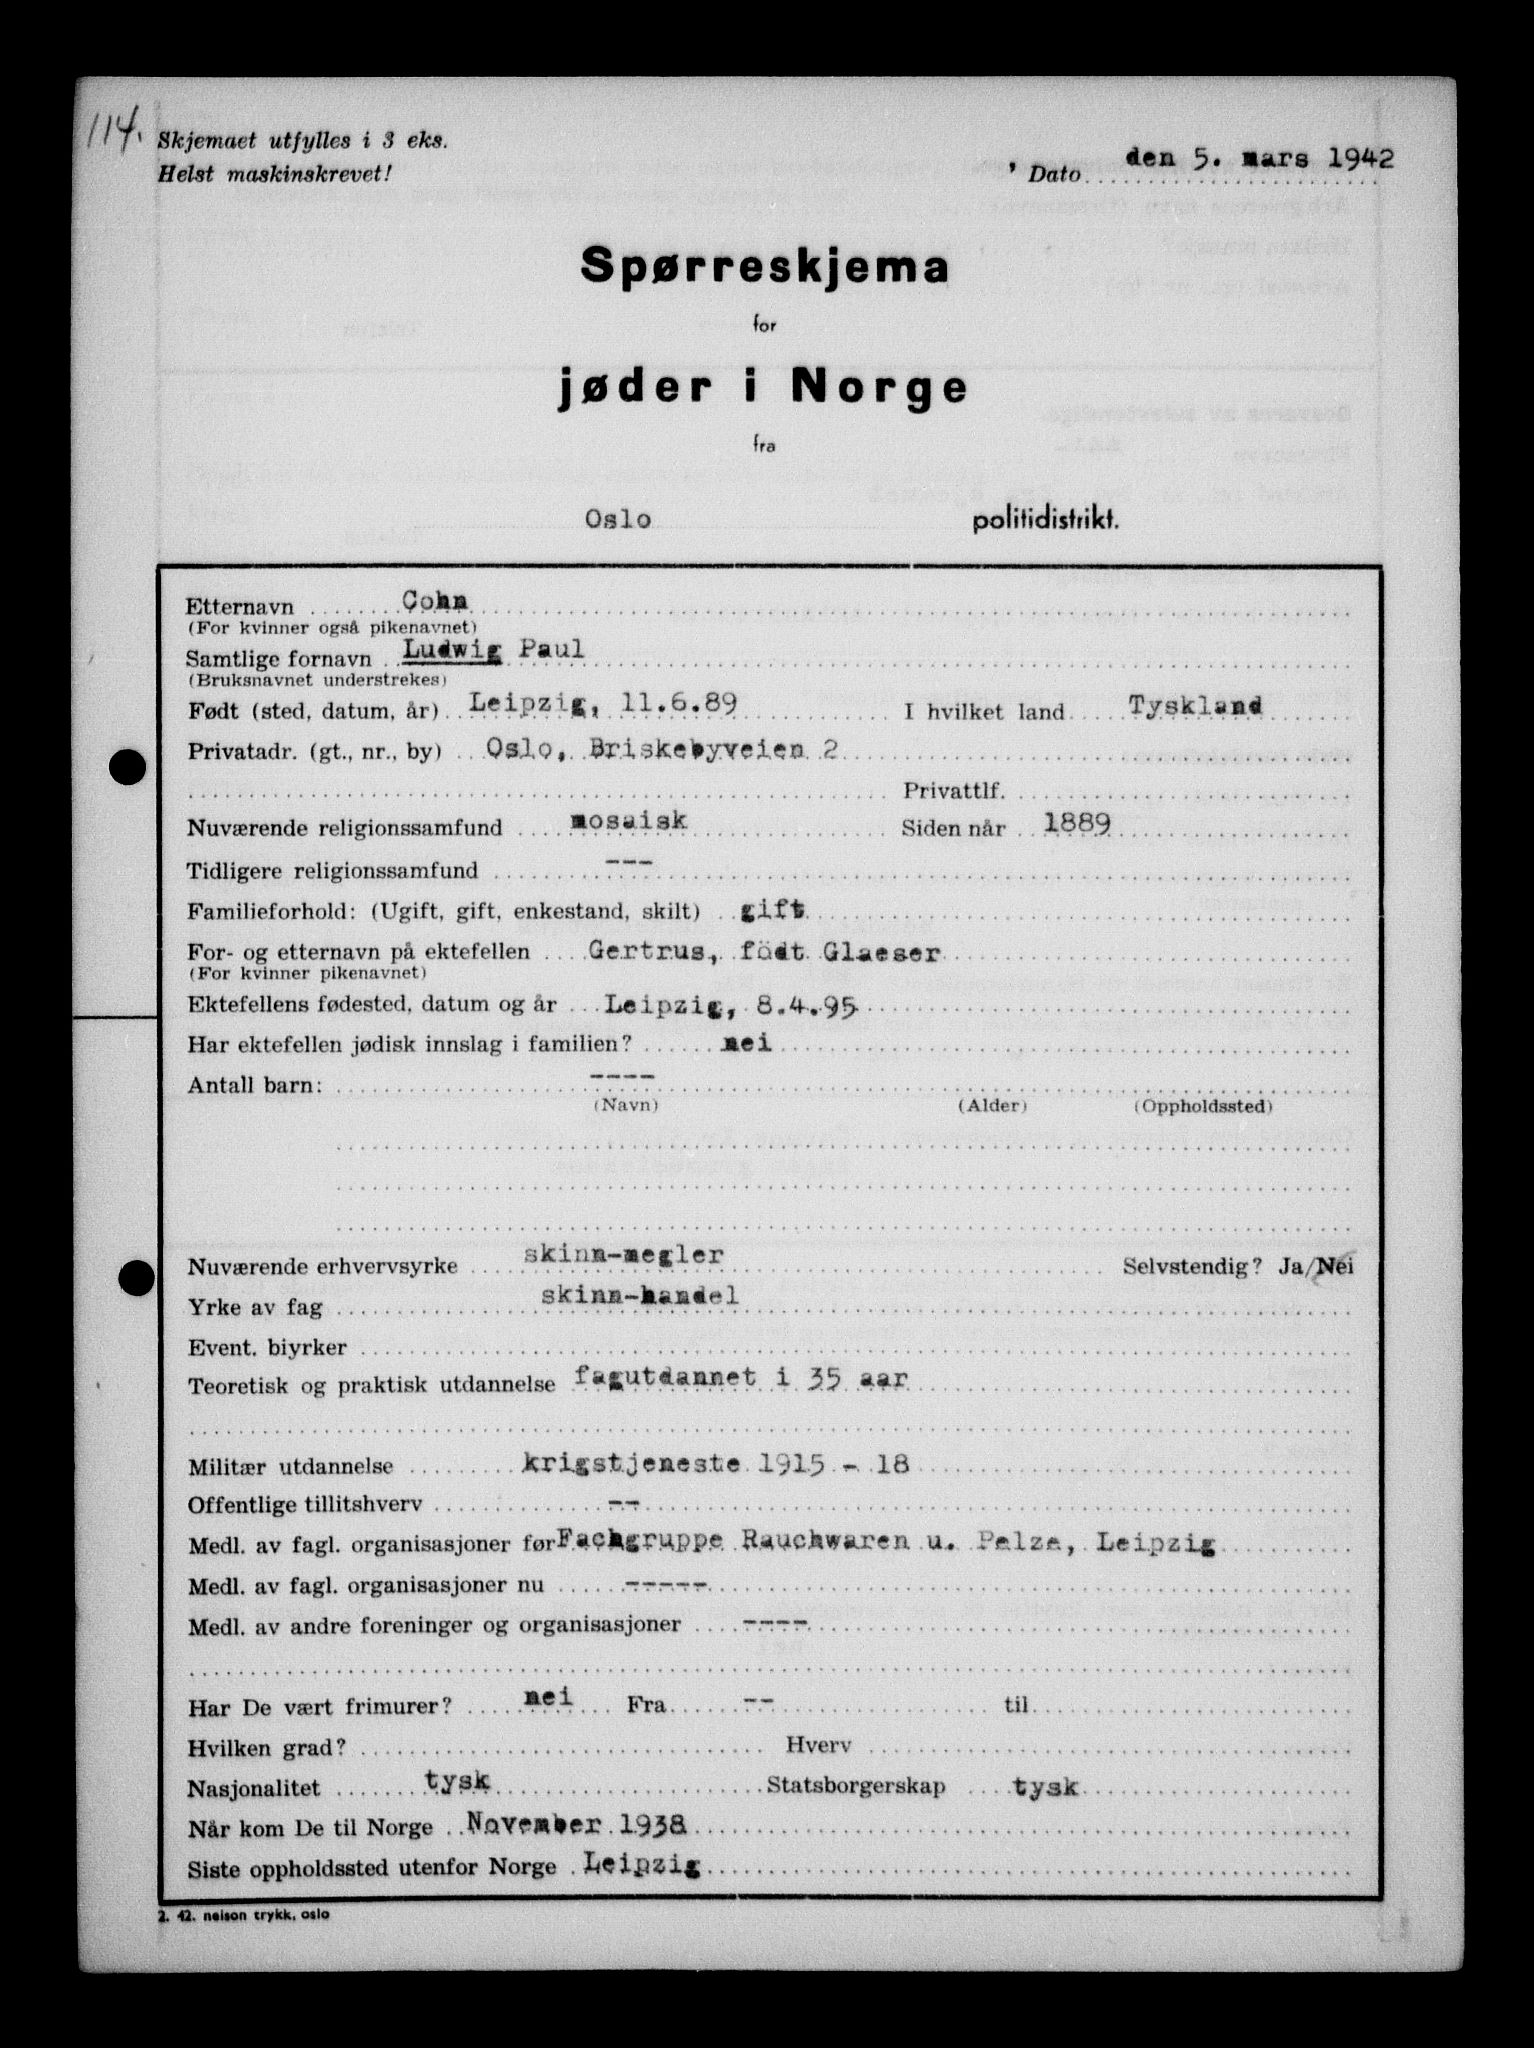 RA, Statspolitiet - Hovedkontoret / Osloavdelingen, G/Ga/L0009: Spørreskjema for jøder i Norge, Oslo Alexander-Gutman, 1942, s. 114